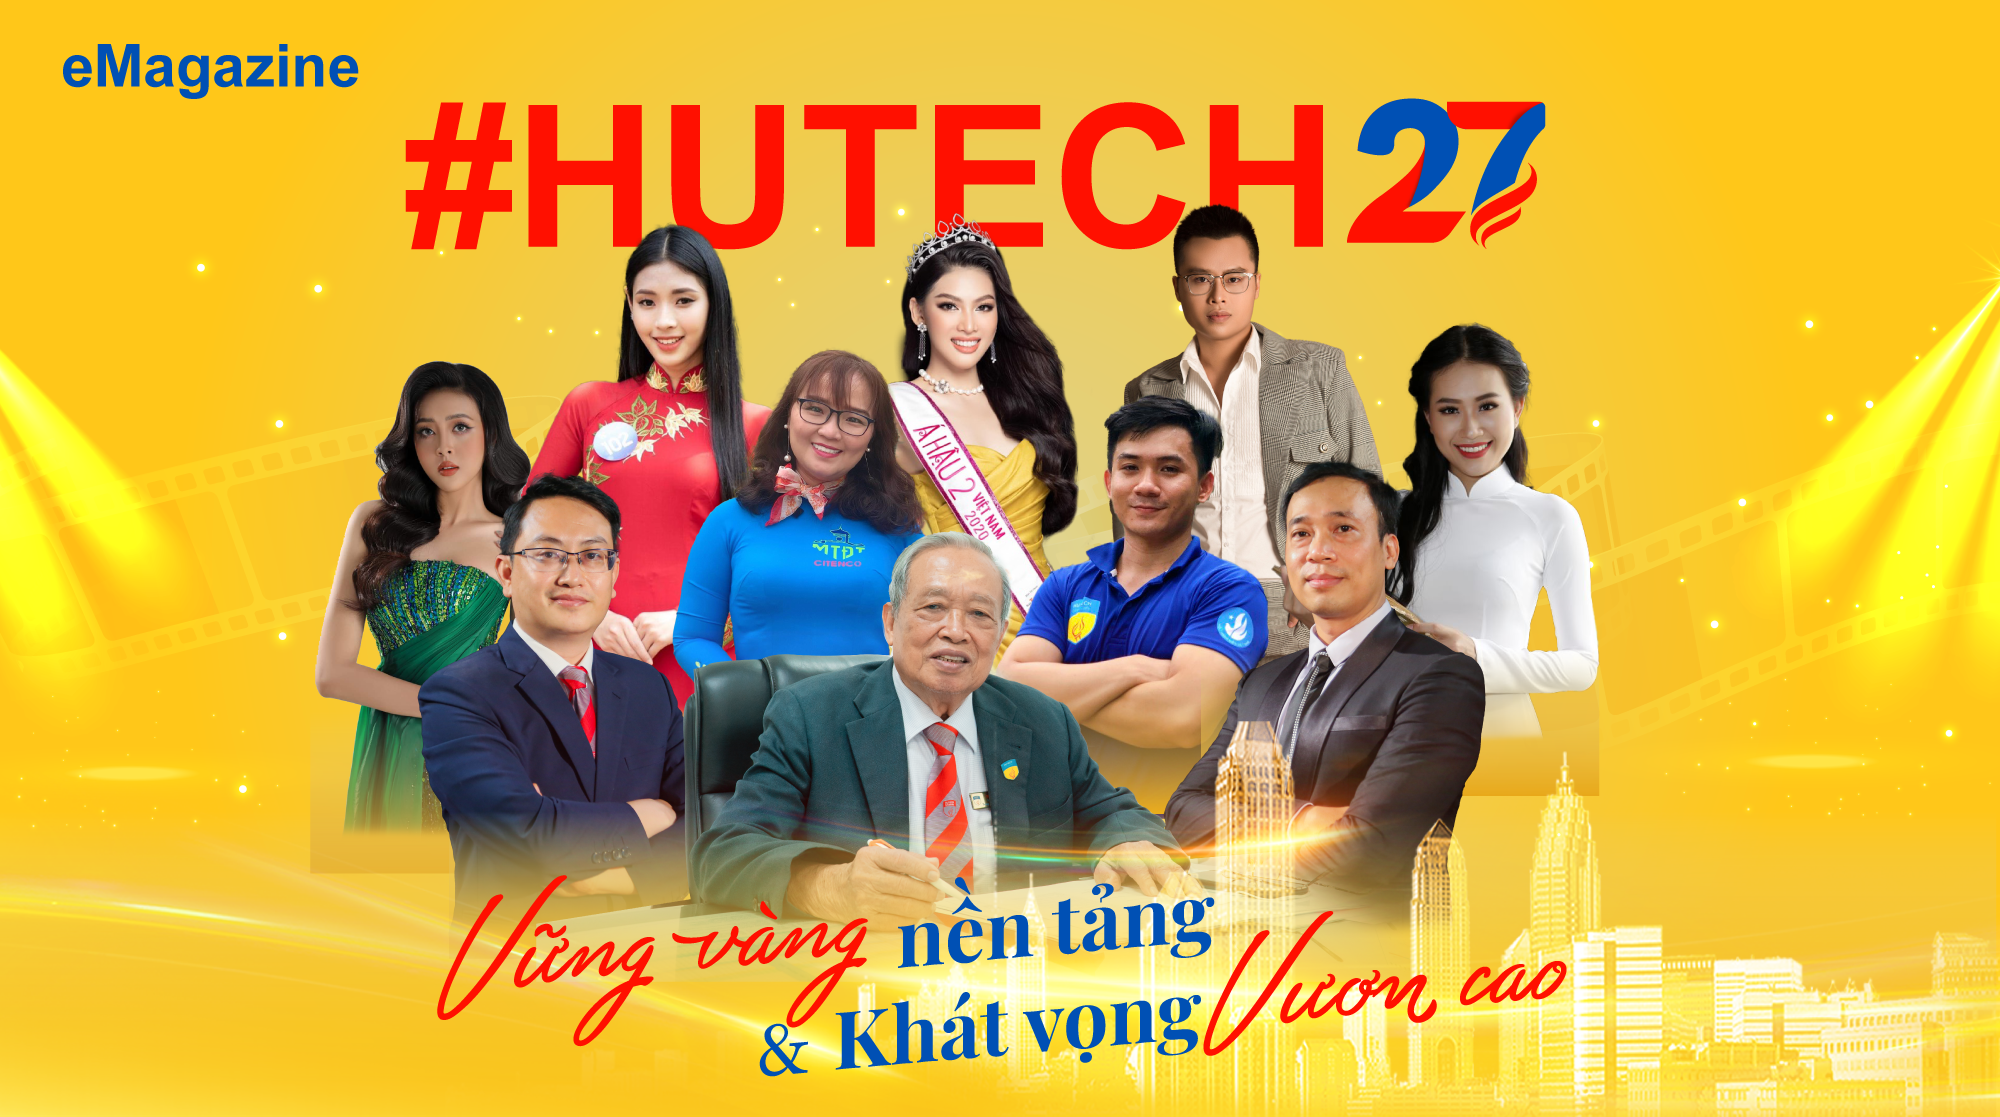 #HUTECH27: VỮNG VÀNG nền tảng & Khát vọng VƯƠN CAO 3